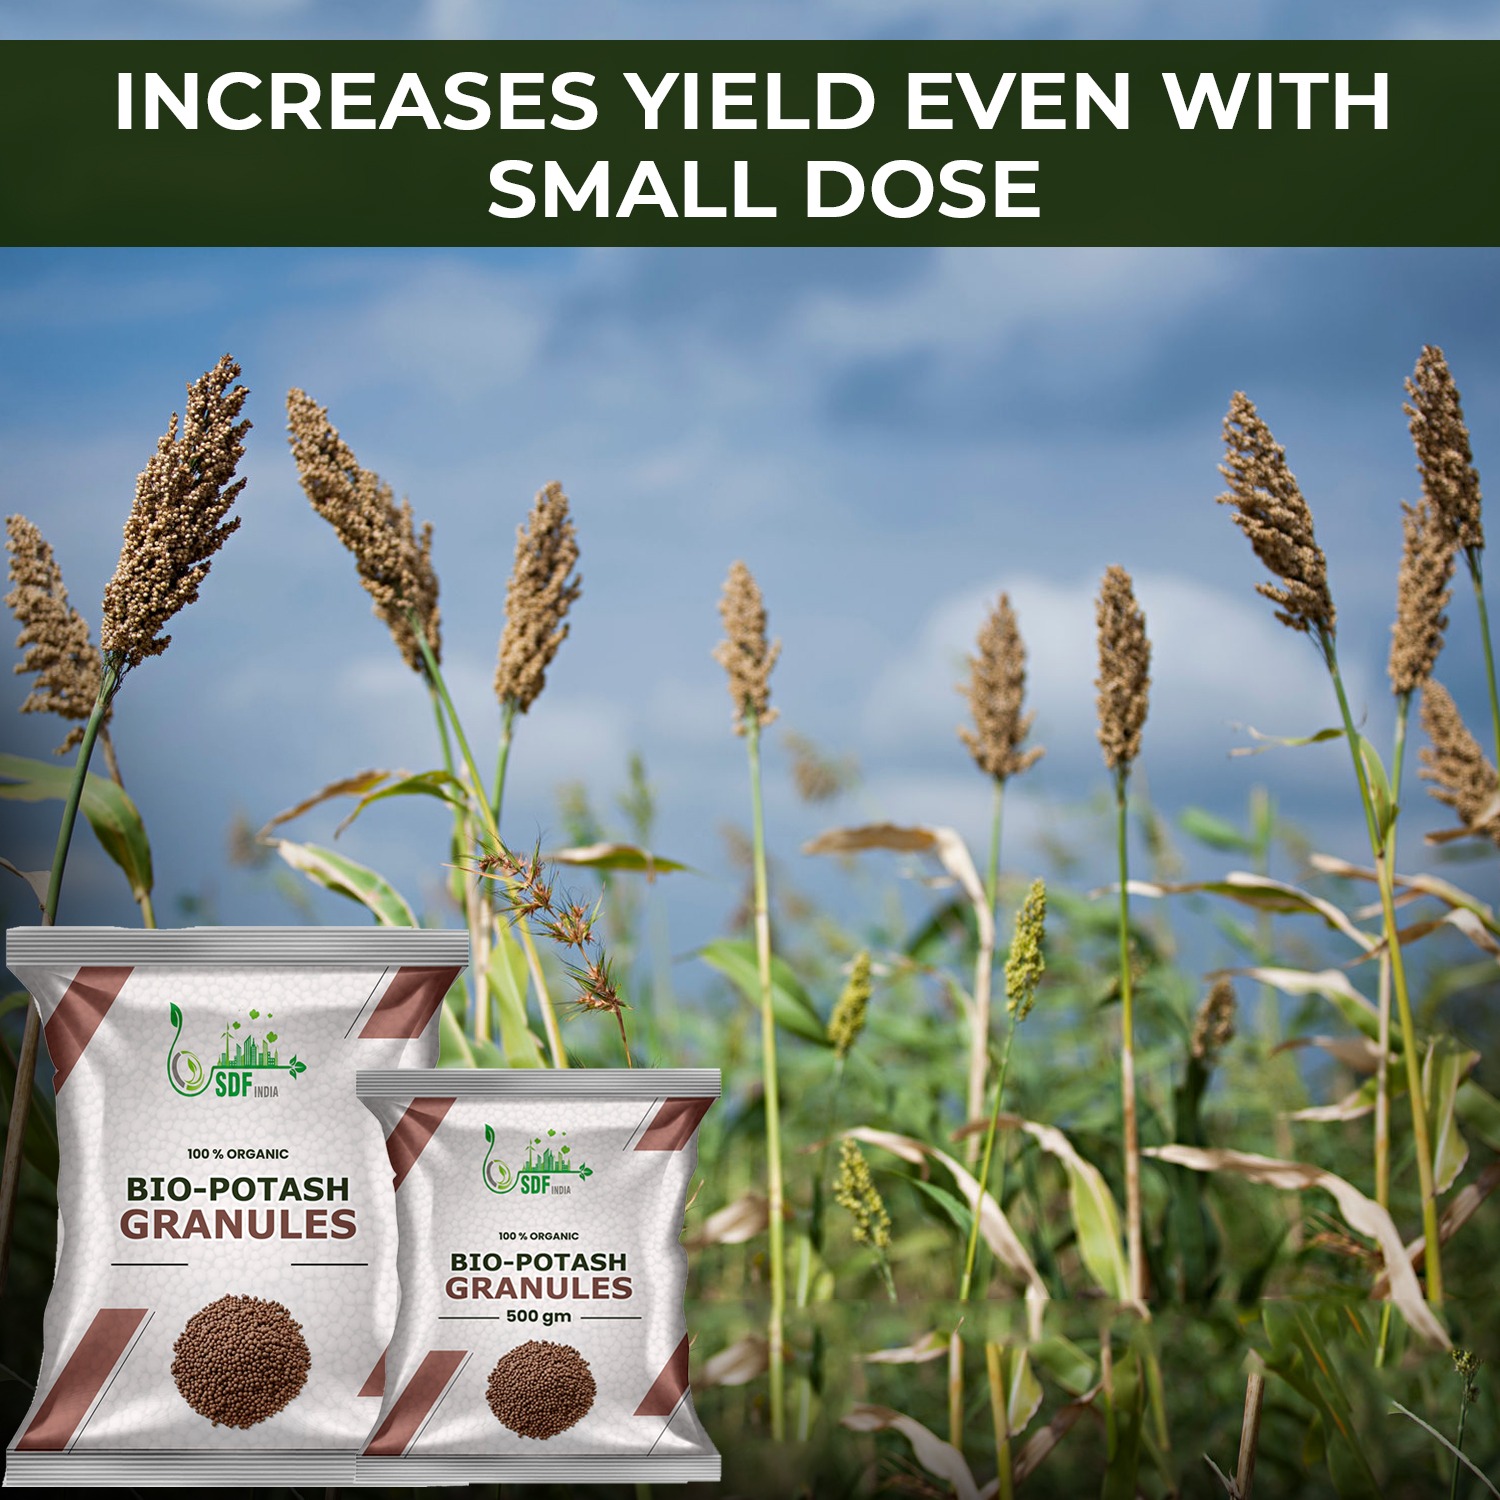 Bio Organic Potash | Essential Fertilizer for Gardening - 1 Kg | Granular Potash Fertiliser for Vegetables, Fruits, Garden Flowers, Agriculture Crops, Indoor & Outdoor Home Plants